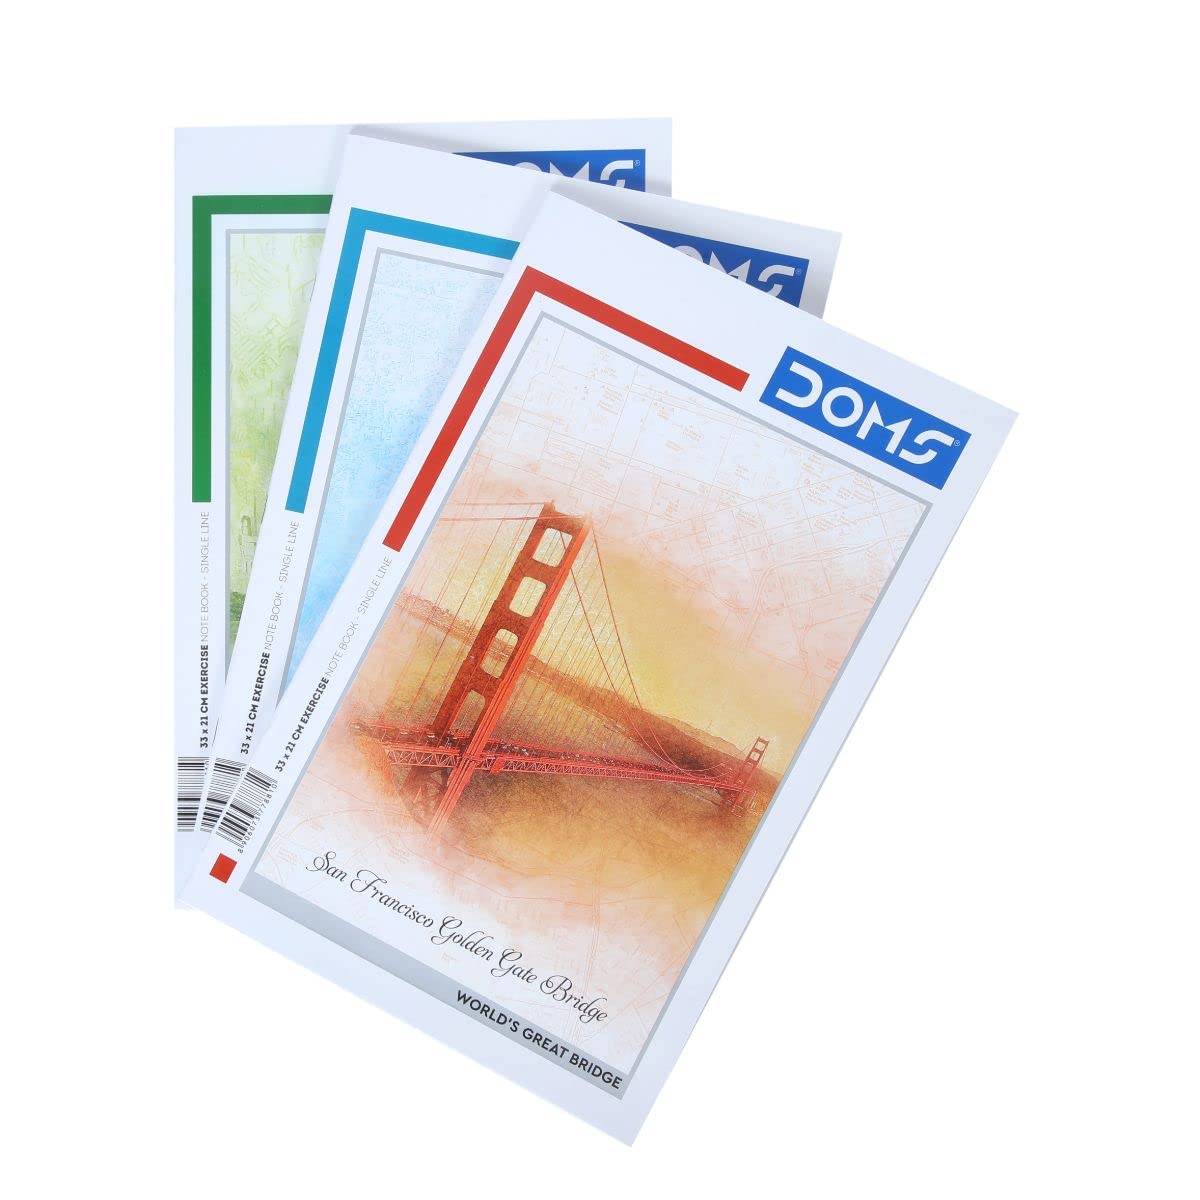 Doms Bridges Series Notebook - Single Line